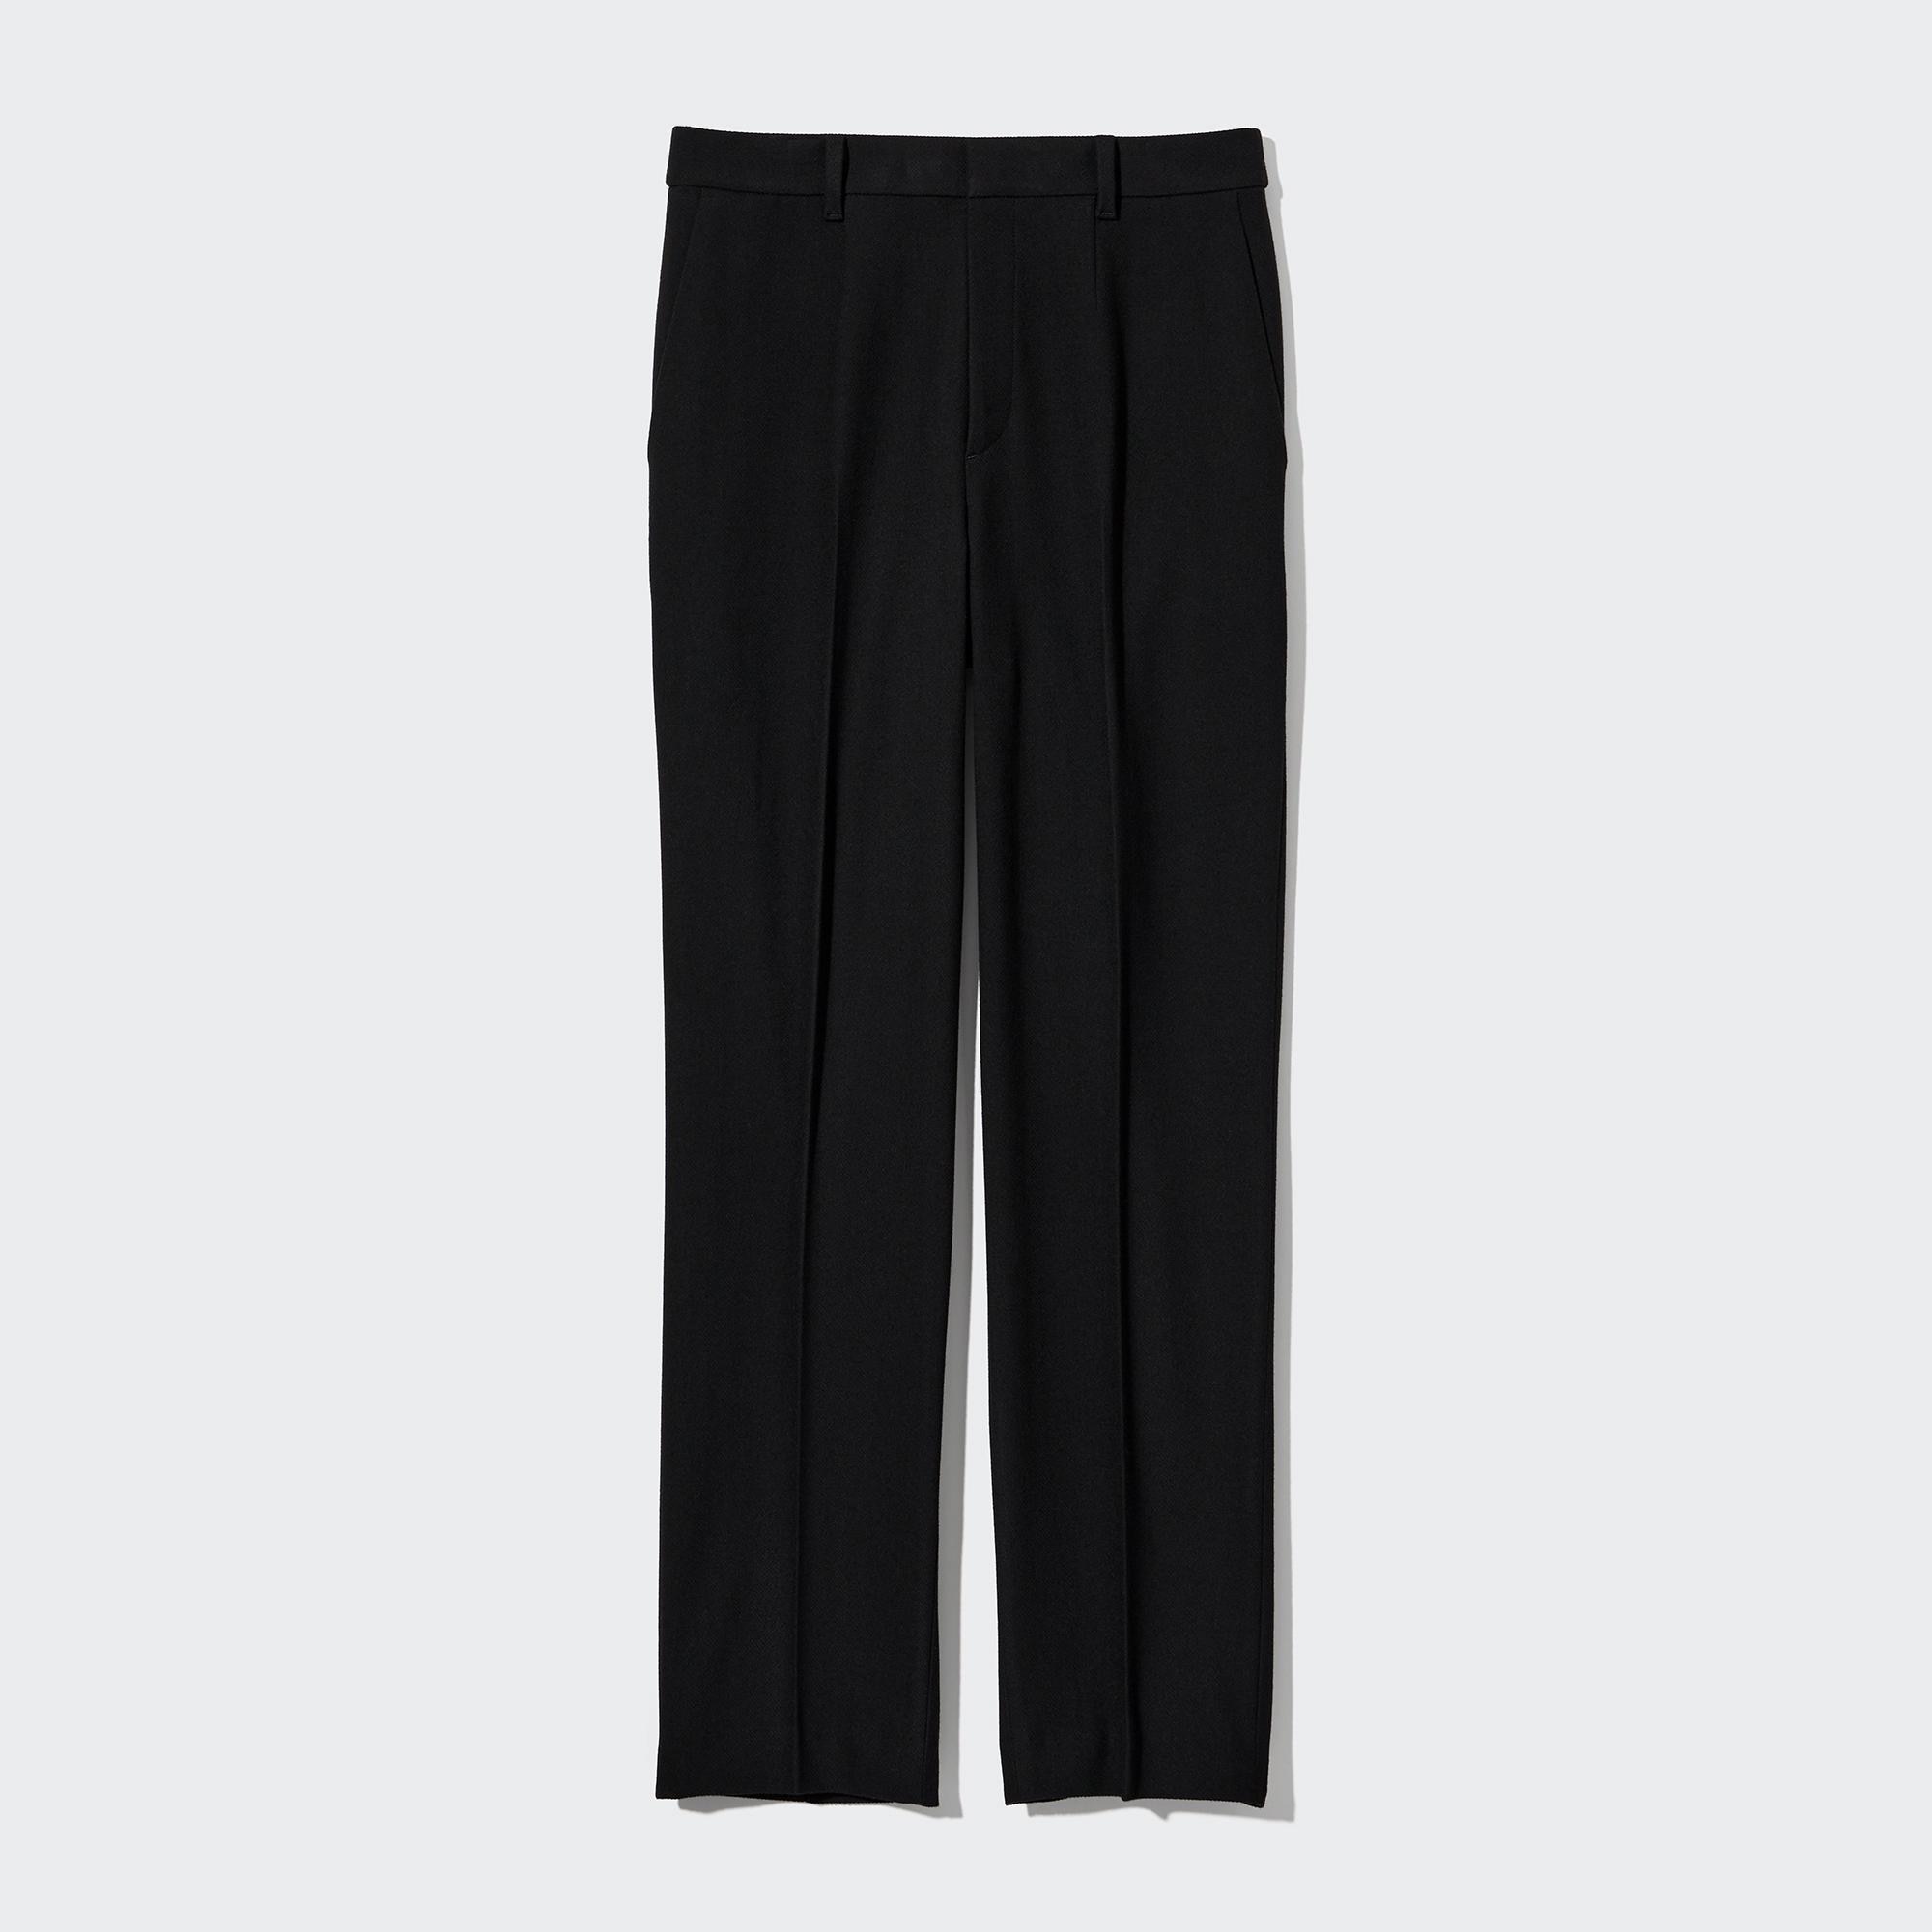 Y's for men Wool Herringbone Pants (Trousers) Black M | PLAYFUL